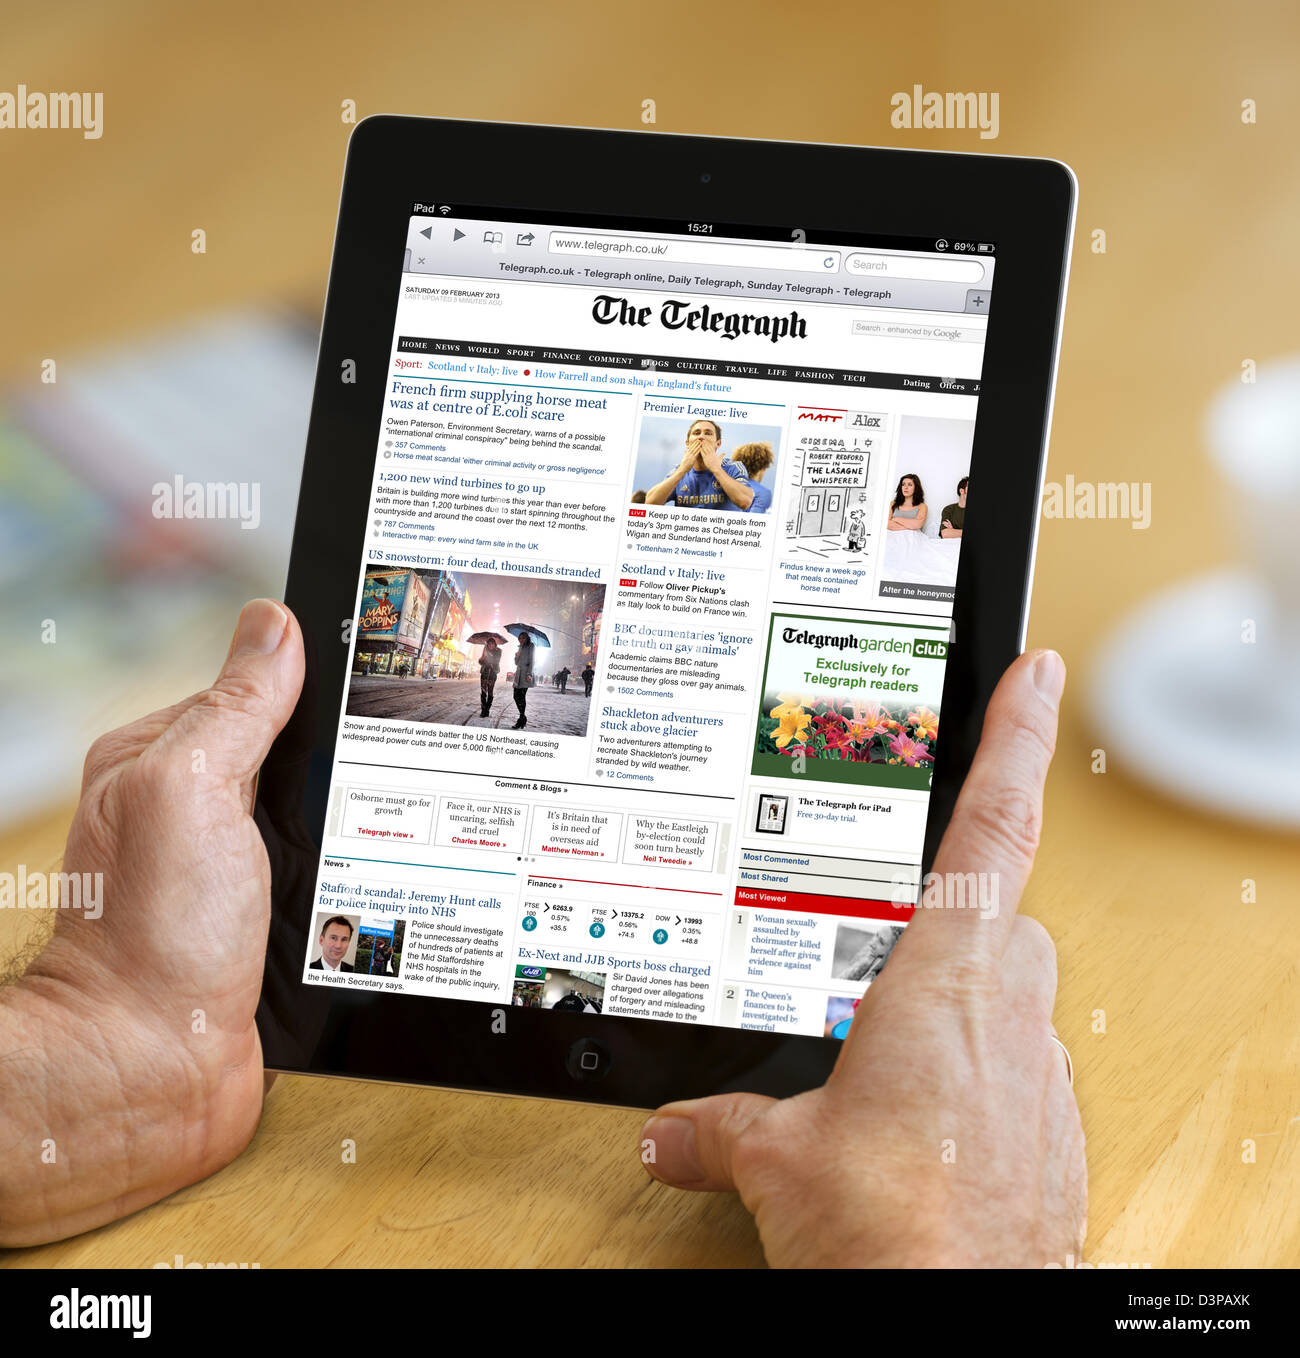 La lecture de l'édition internet du Telegraph Journal en ligne sur un iPad 4e génération, UK Banque D'Images